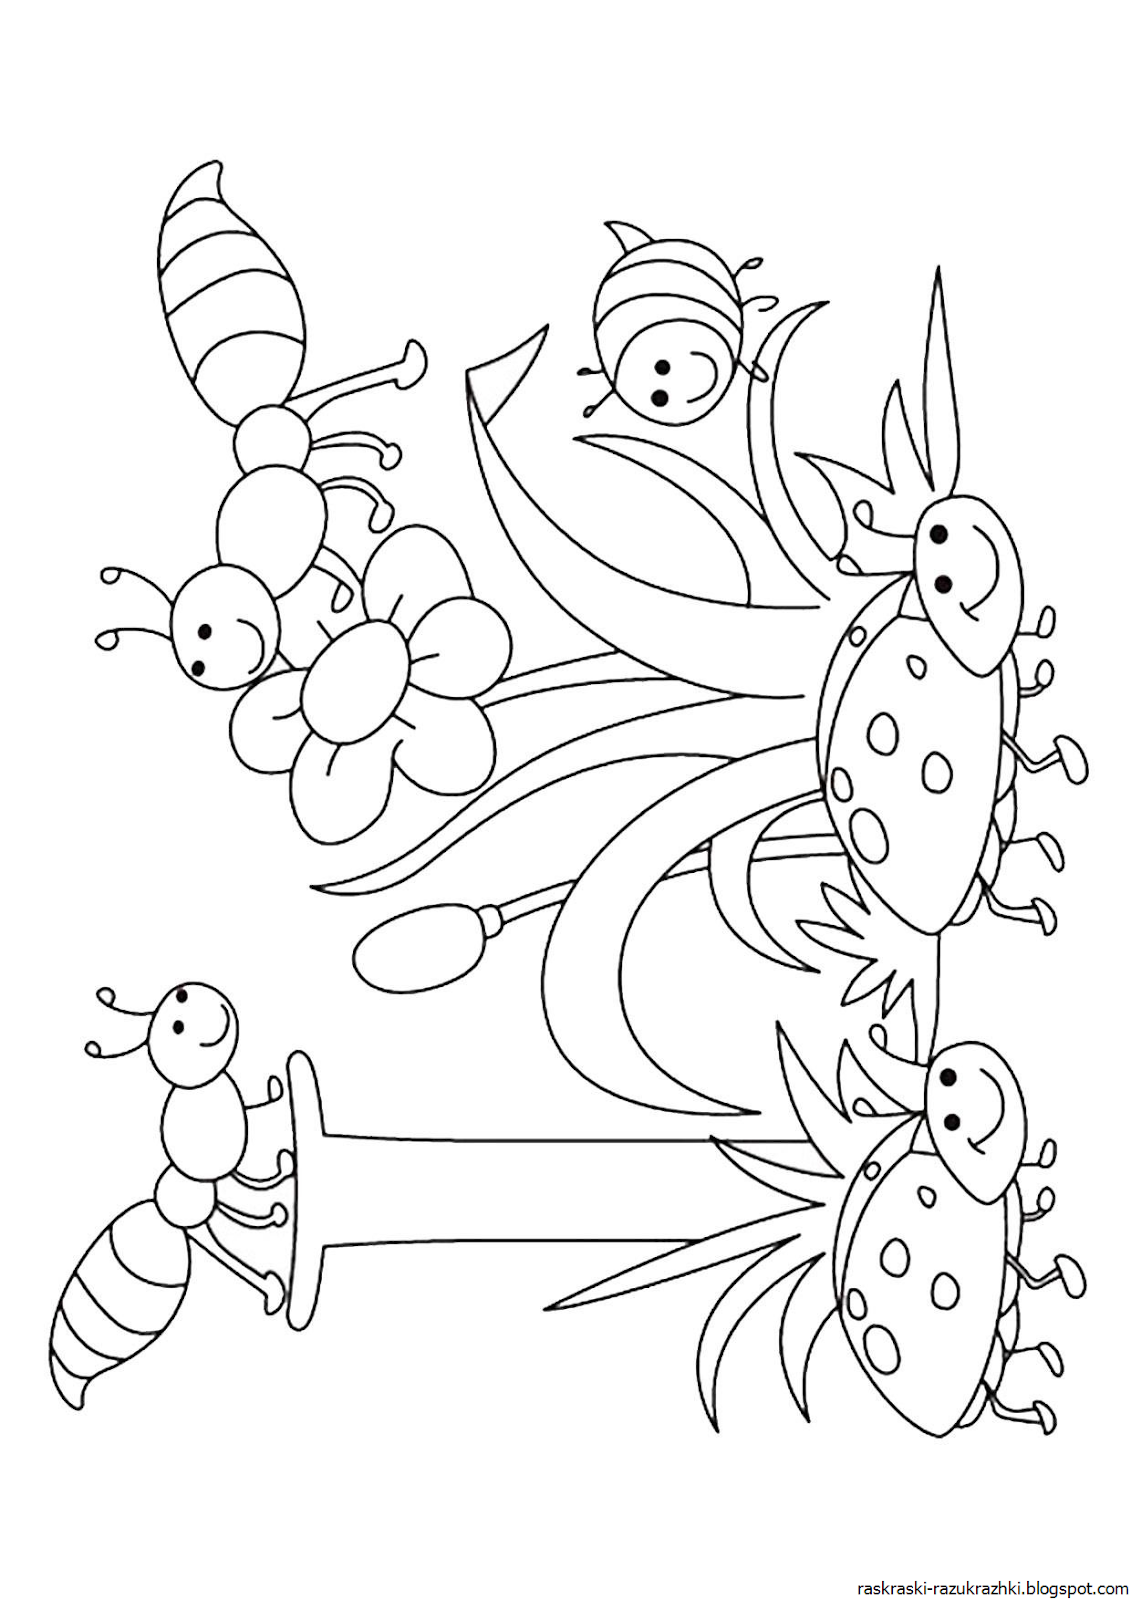 Раскраски насекомые для детей 3 4. Насекомые. Раскраска. Насекомые раскраска для детей. Насекомые для раскрашивания детям. Раскраска насекомые для дошкольников.